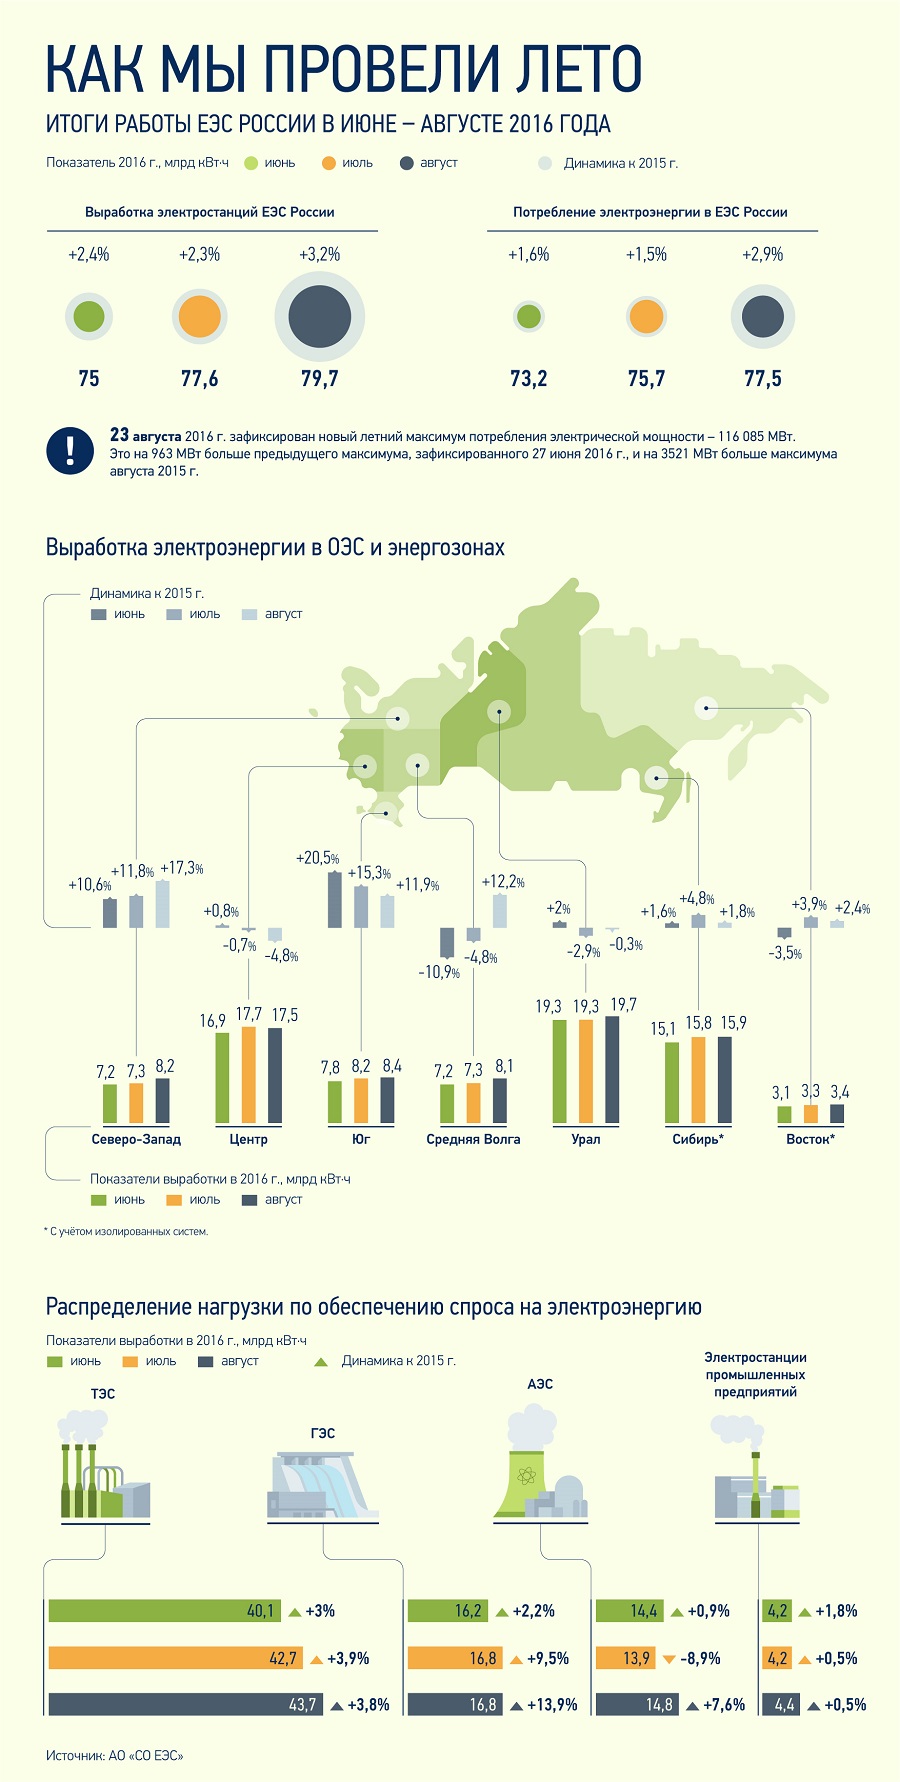 Итоги работы ЕЭС России в июле-августе 2016 года